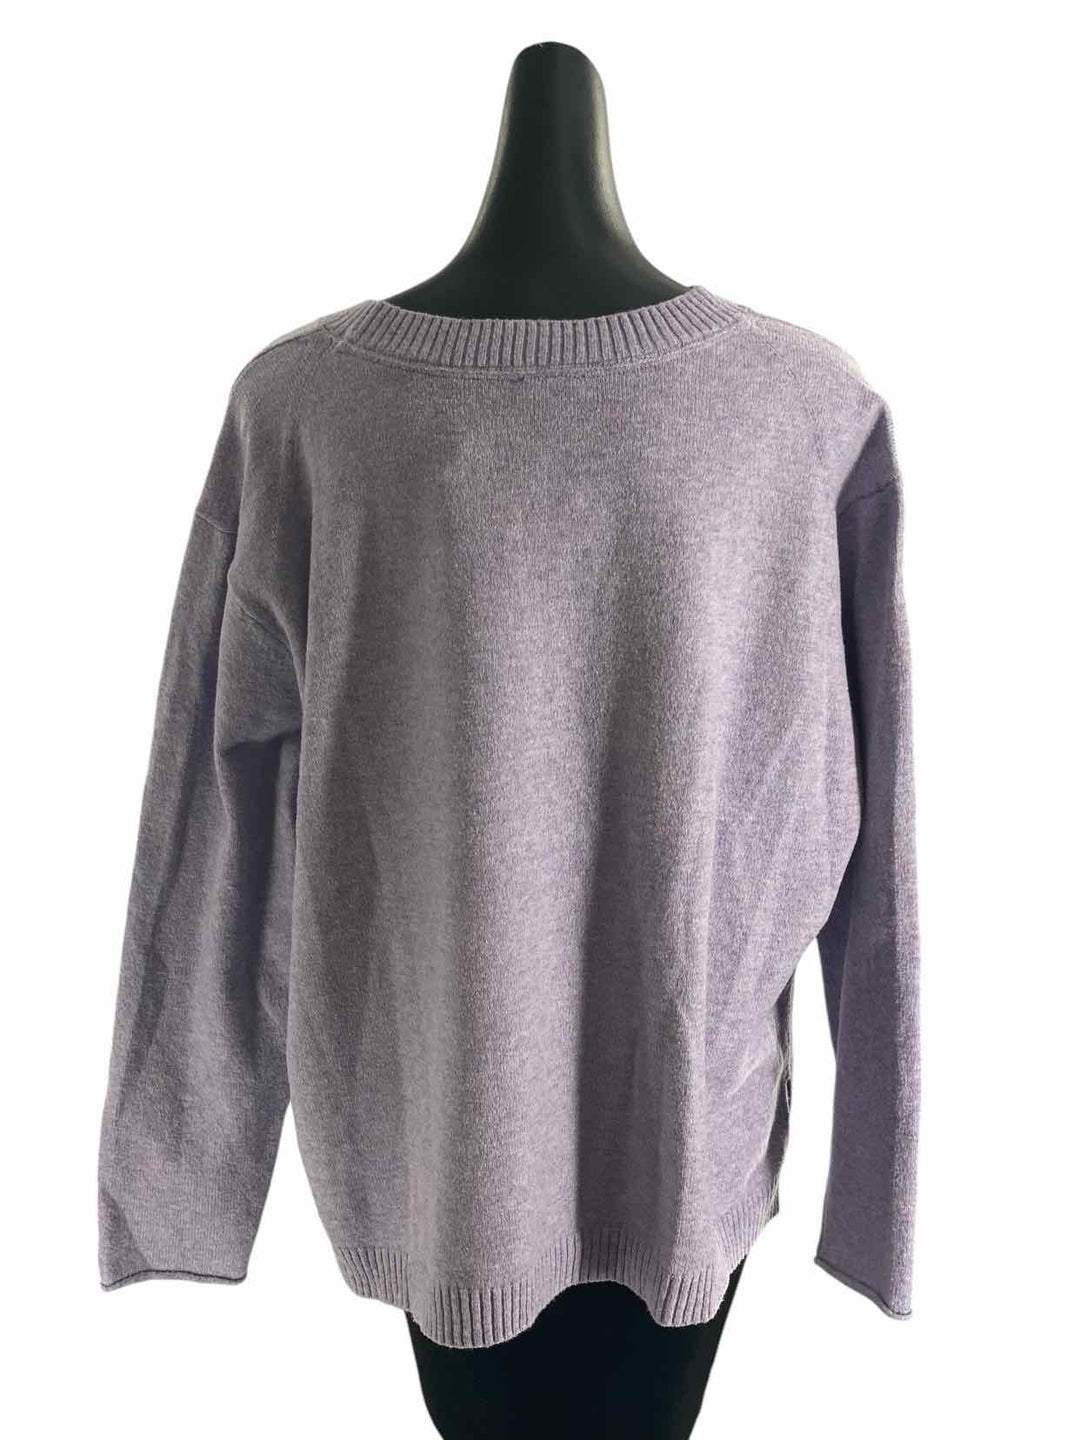 J. Jill Size L Purple Sweater